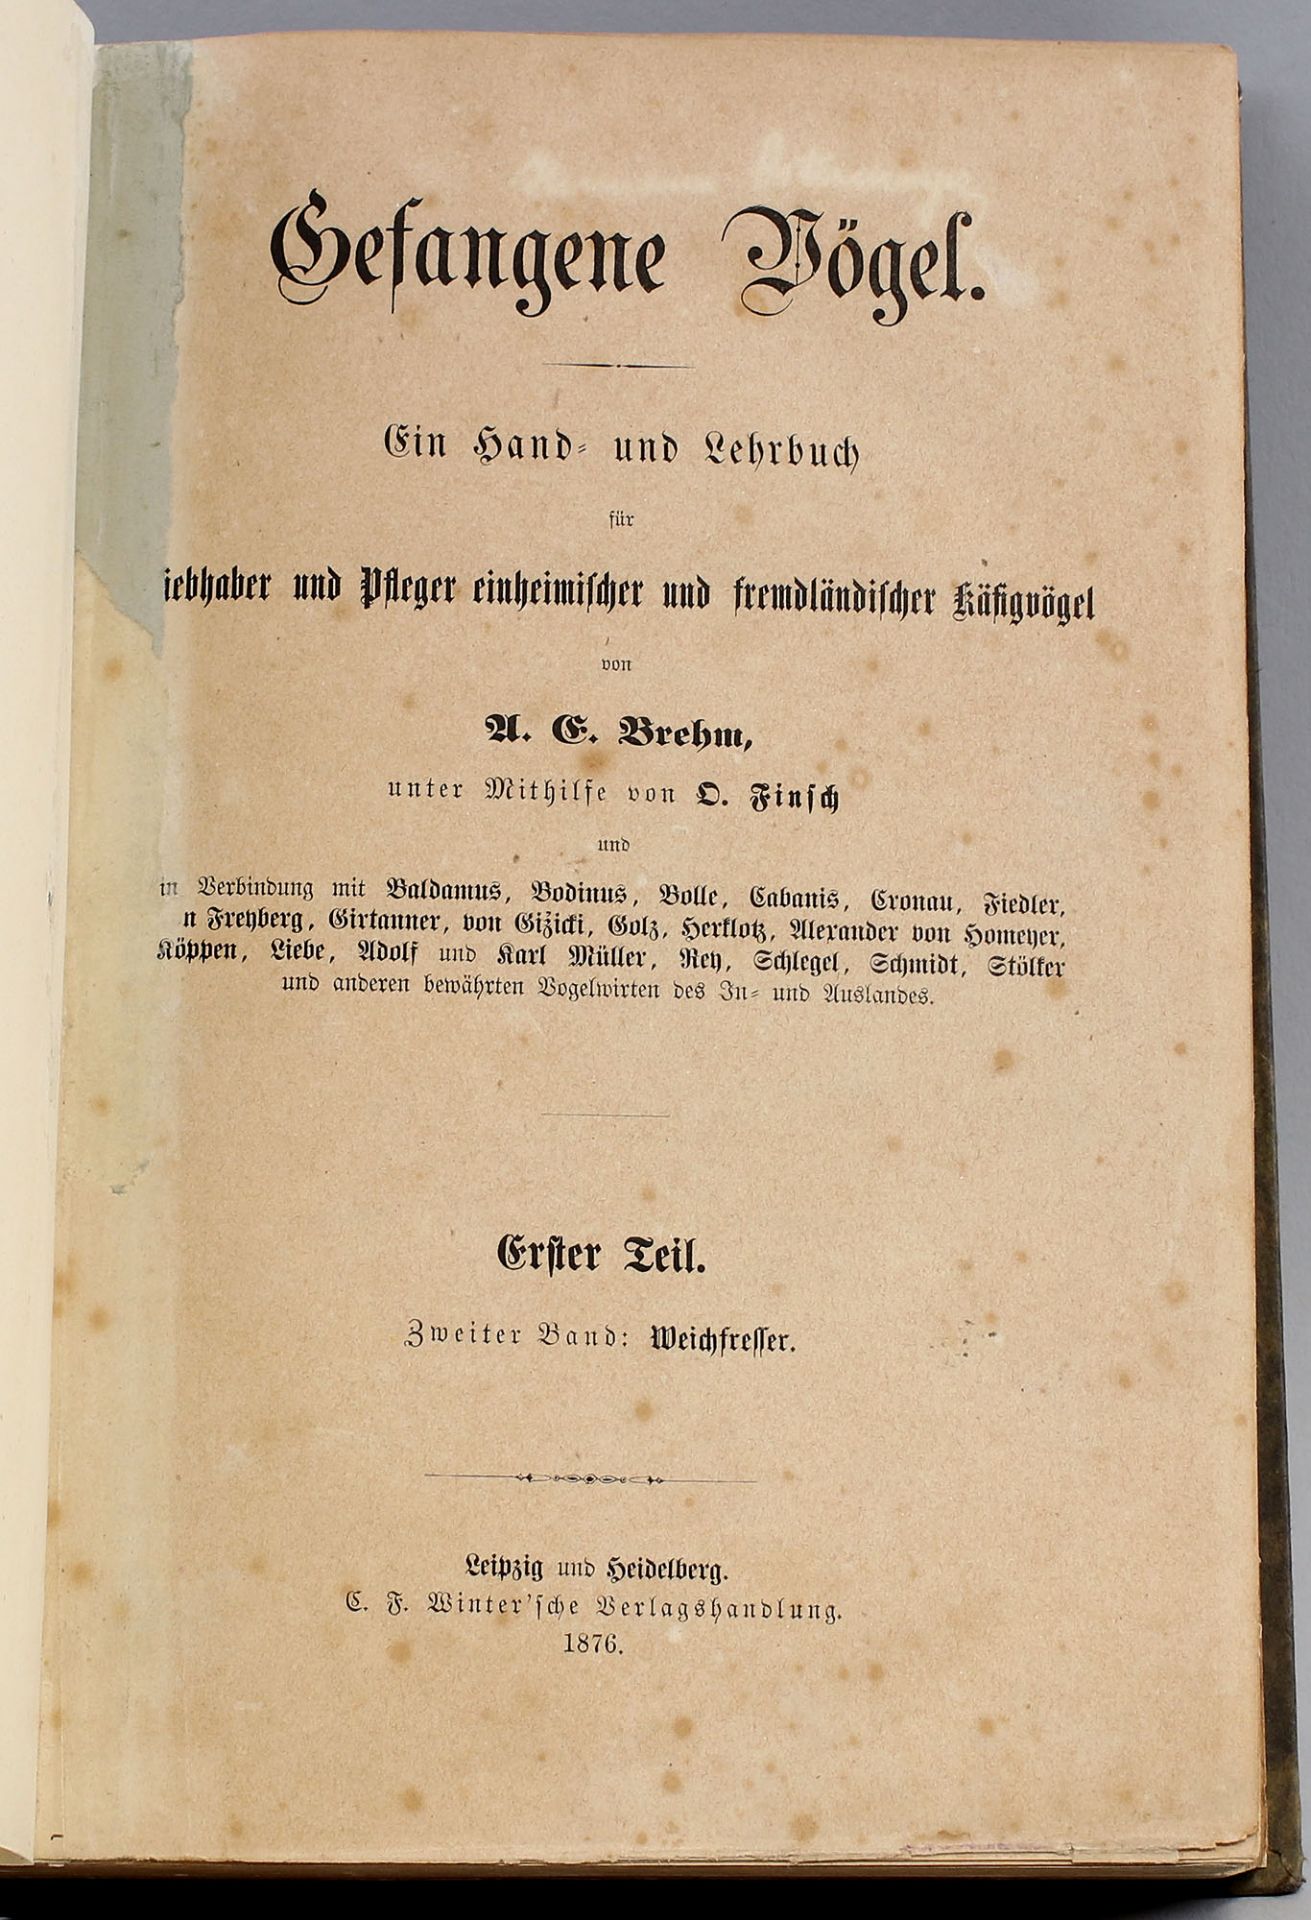 Gefangene Vögel - Ein Hand- und Lehrbuch v. 1876 - Image 2 of 2